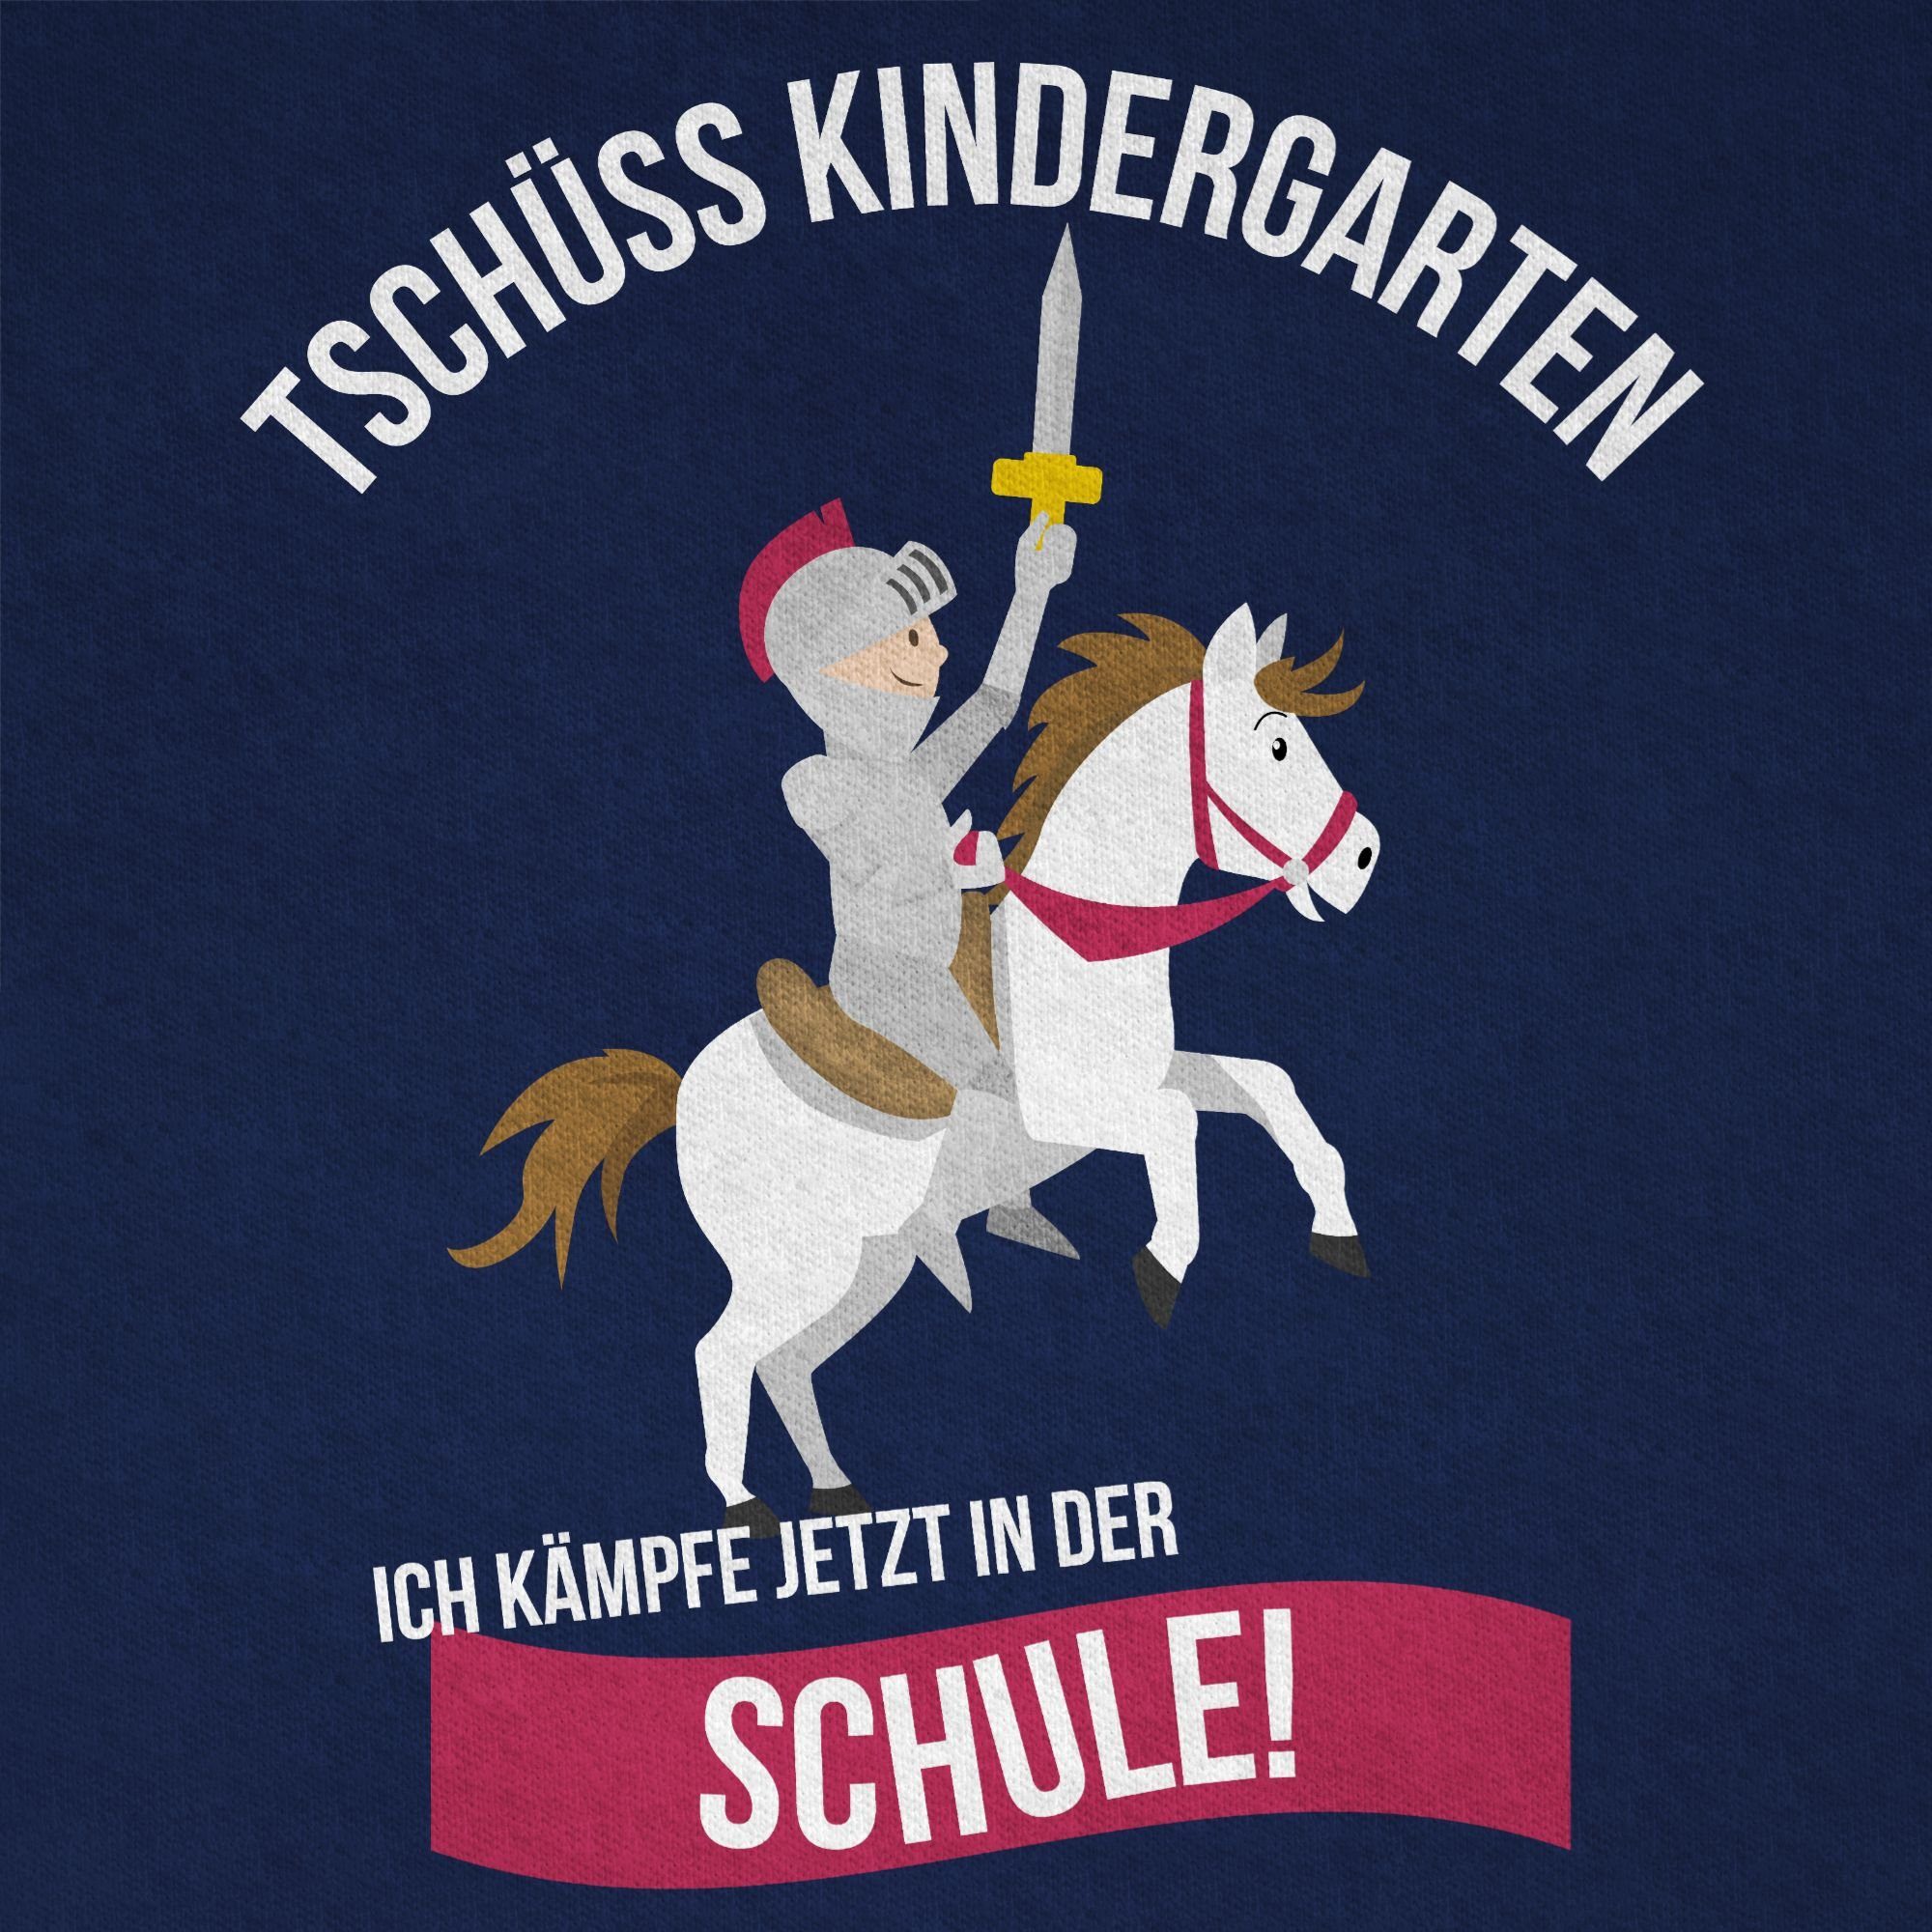 Shirtracer T-Shirt Tschüss Dunkelblau Kindergarten Schulanfang Ritter Geschenke 1 Junge Einschulung Schule